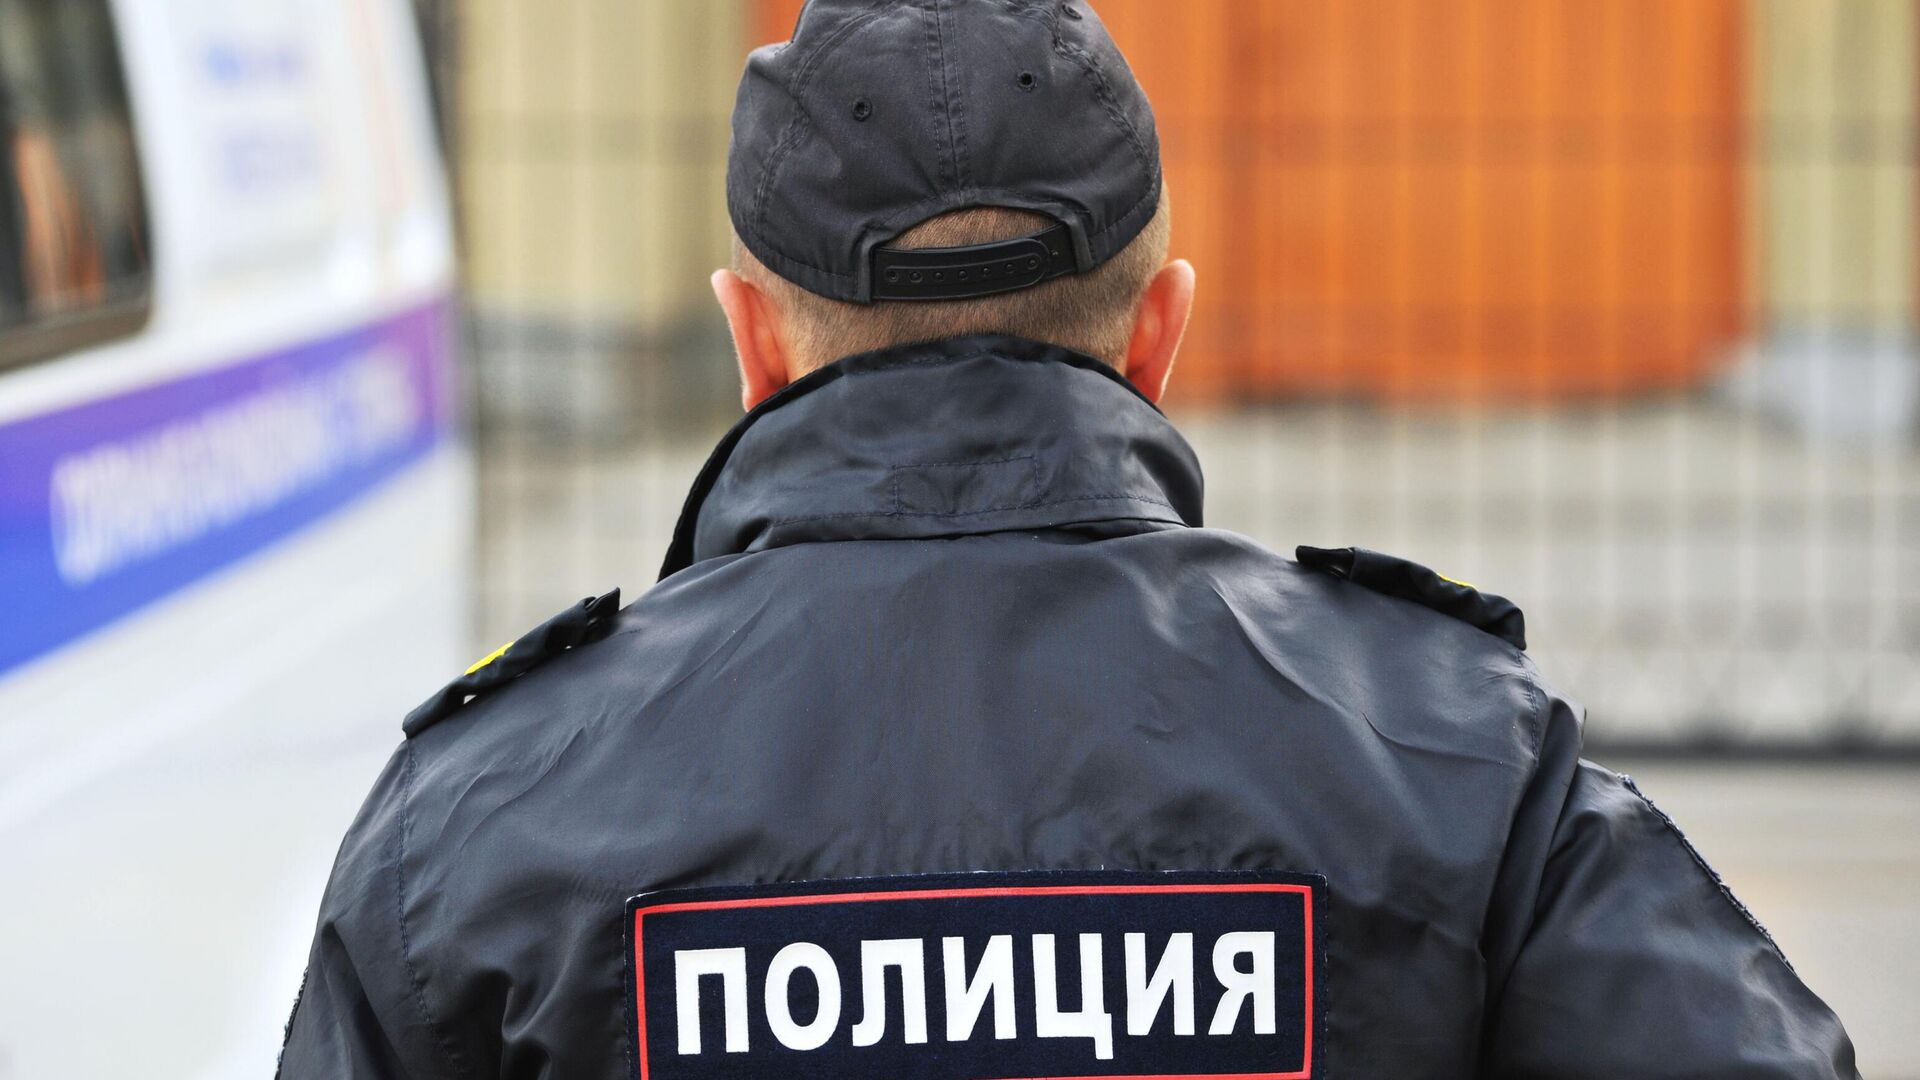 Сотрудник полиции Управления министерства внутренних дел Российской Федерации0